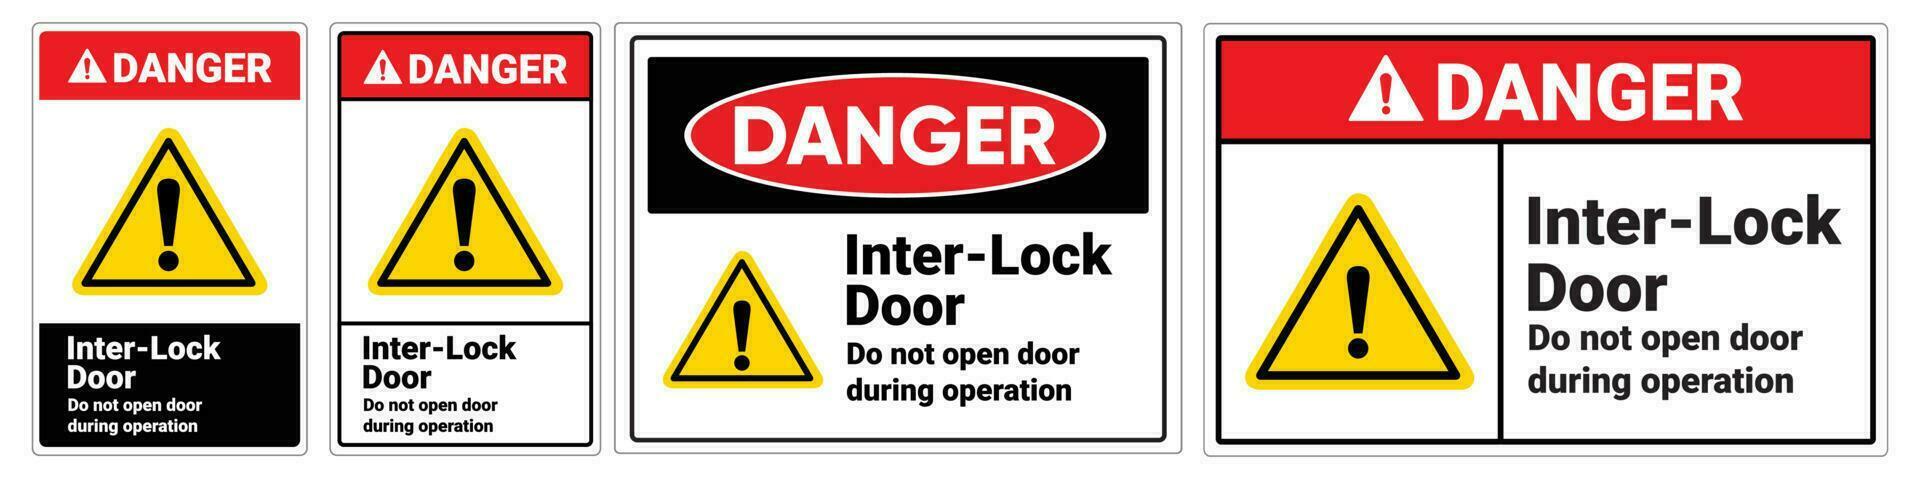 la seguridad firmar enterrar bloquear puerta hacer no abierto puerta durante operación vector